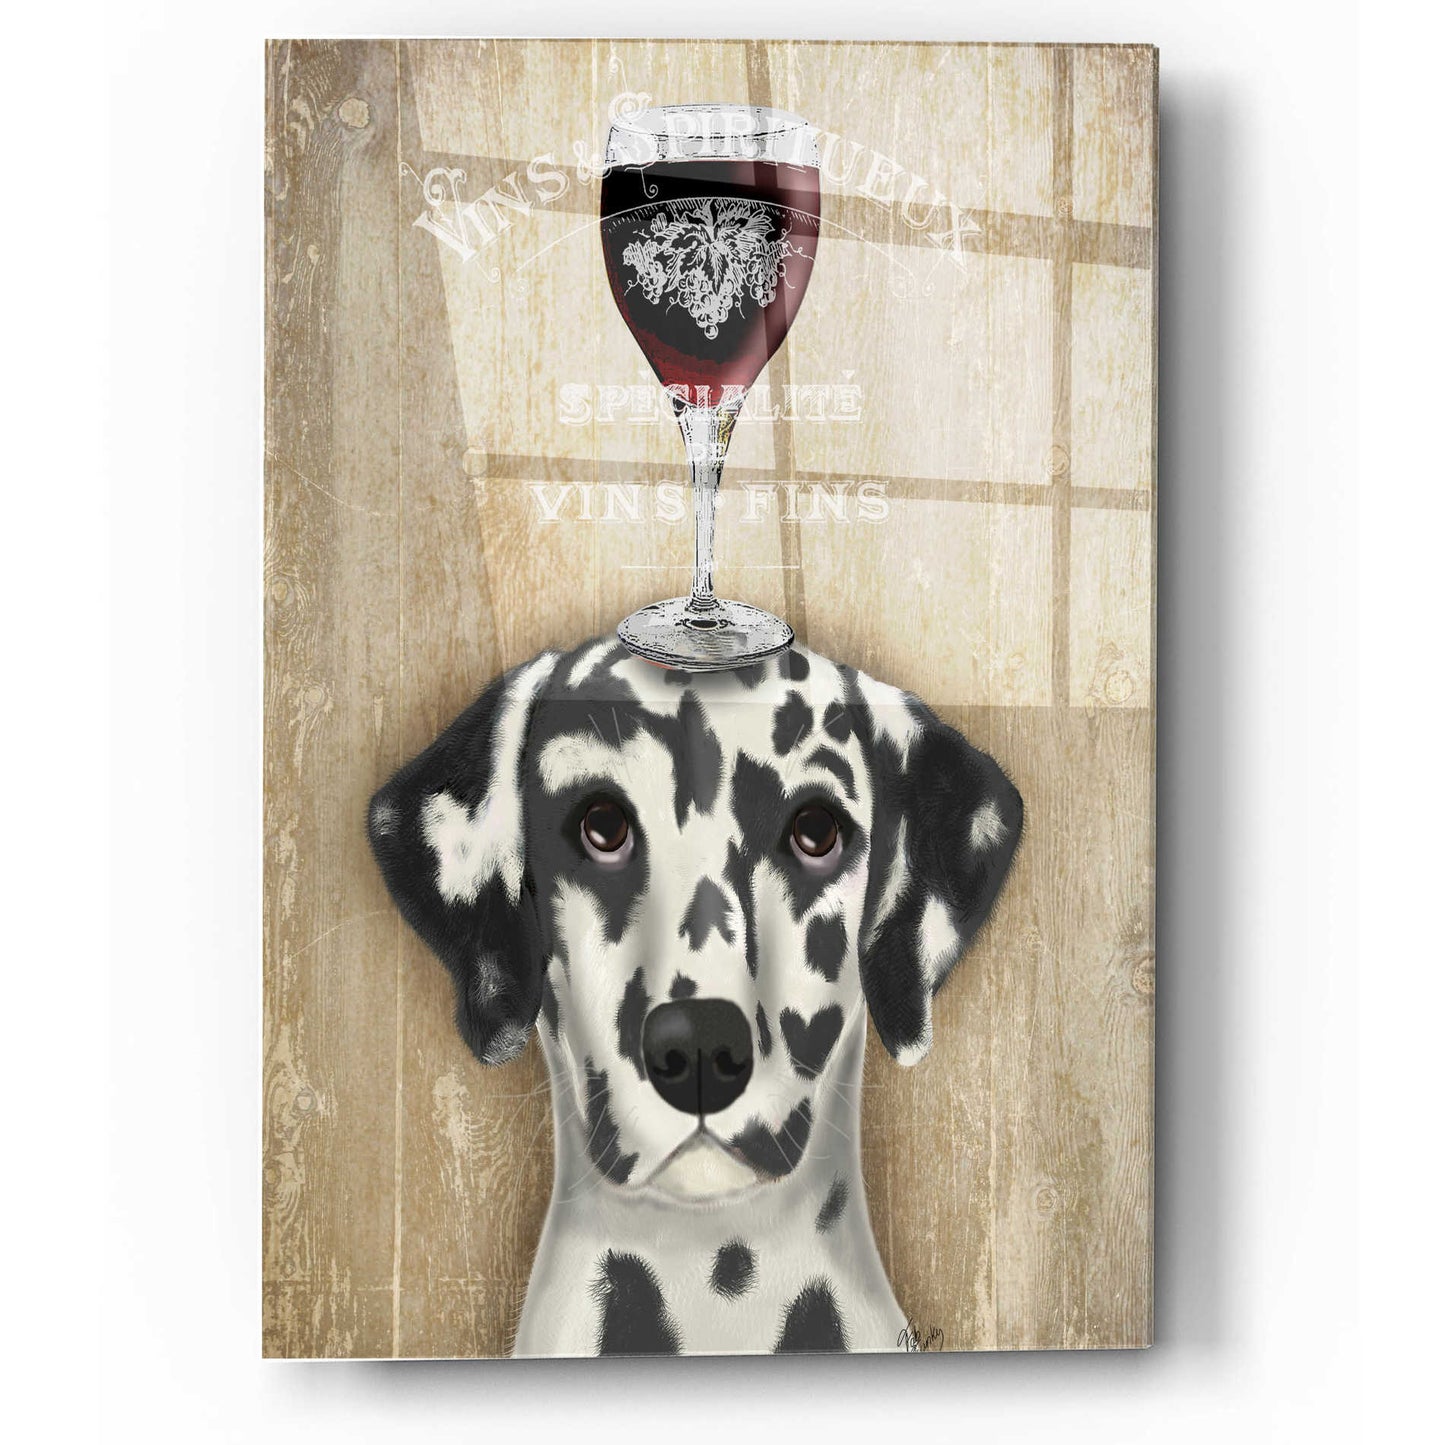 Epic Art 'Dog Au Vin Dalmatian' by Fab Funky, Acrylic Glass Wall Art,12x16